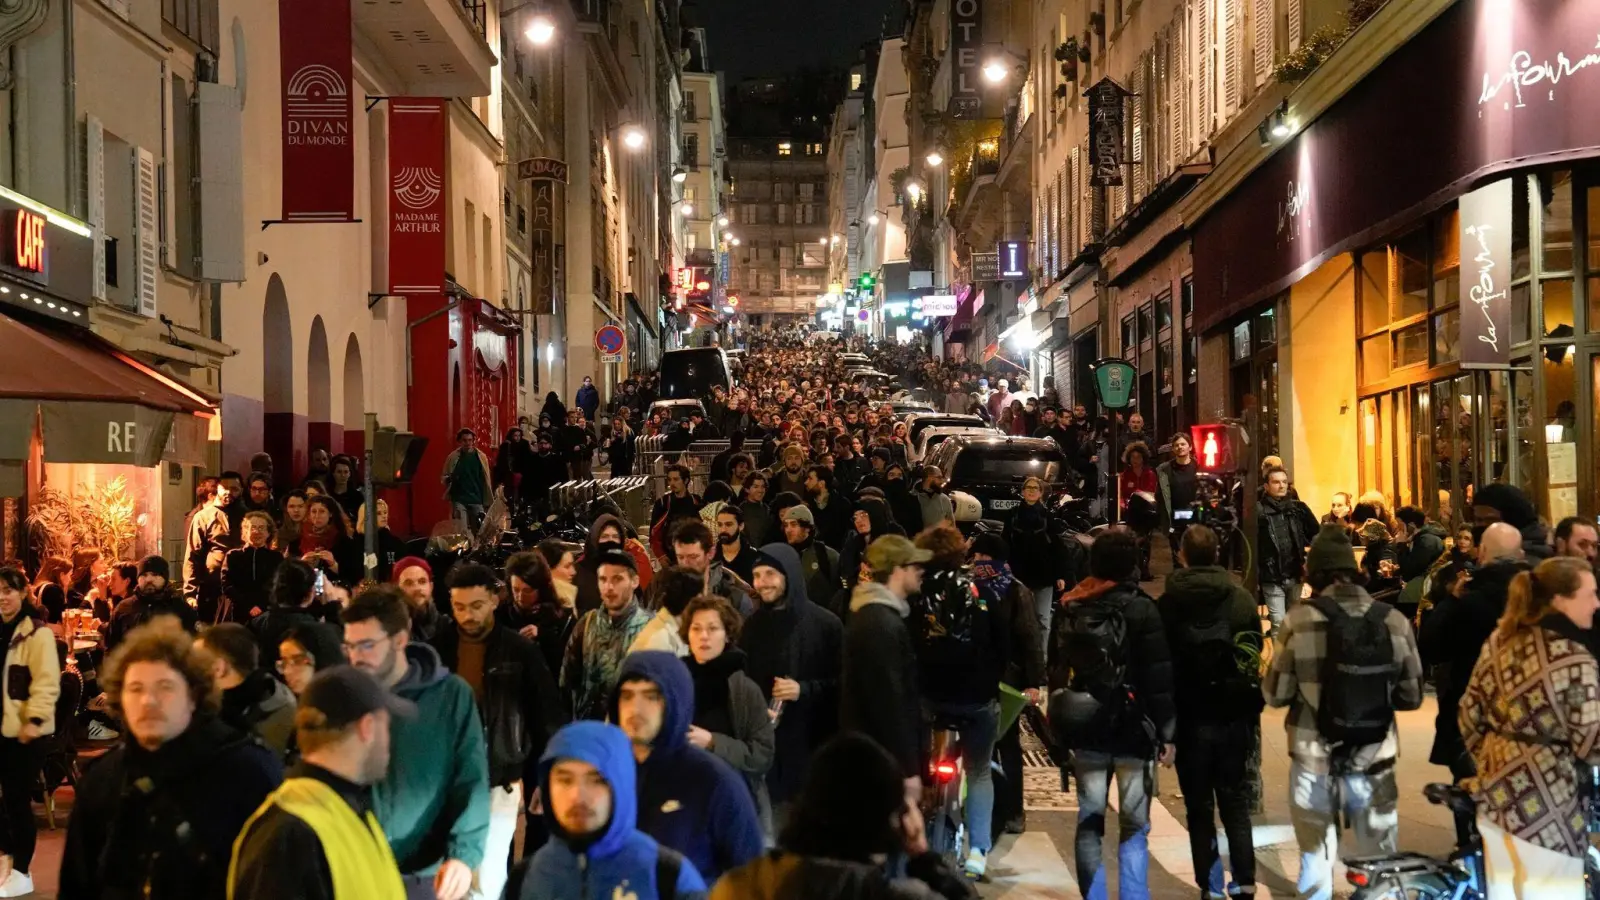 Demonstranten marschieren während einer Demonstration in Paris. (Foto: Lewis Joly/AP/dpa)